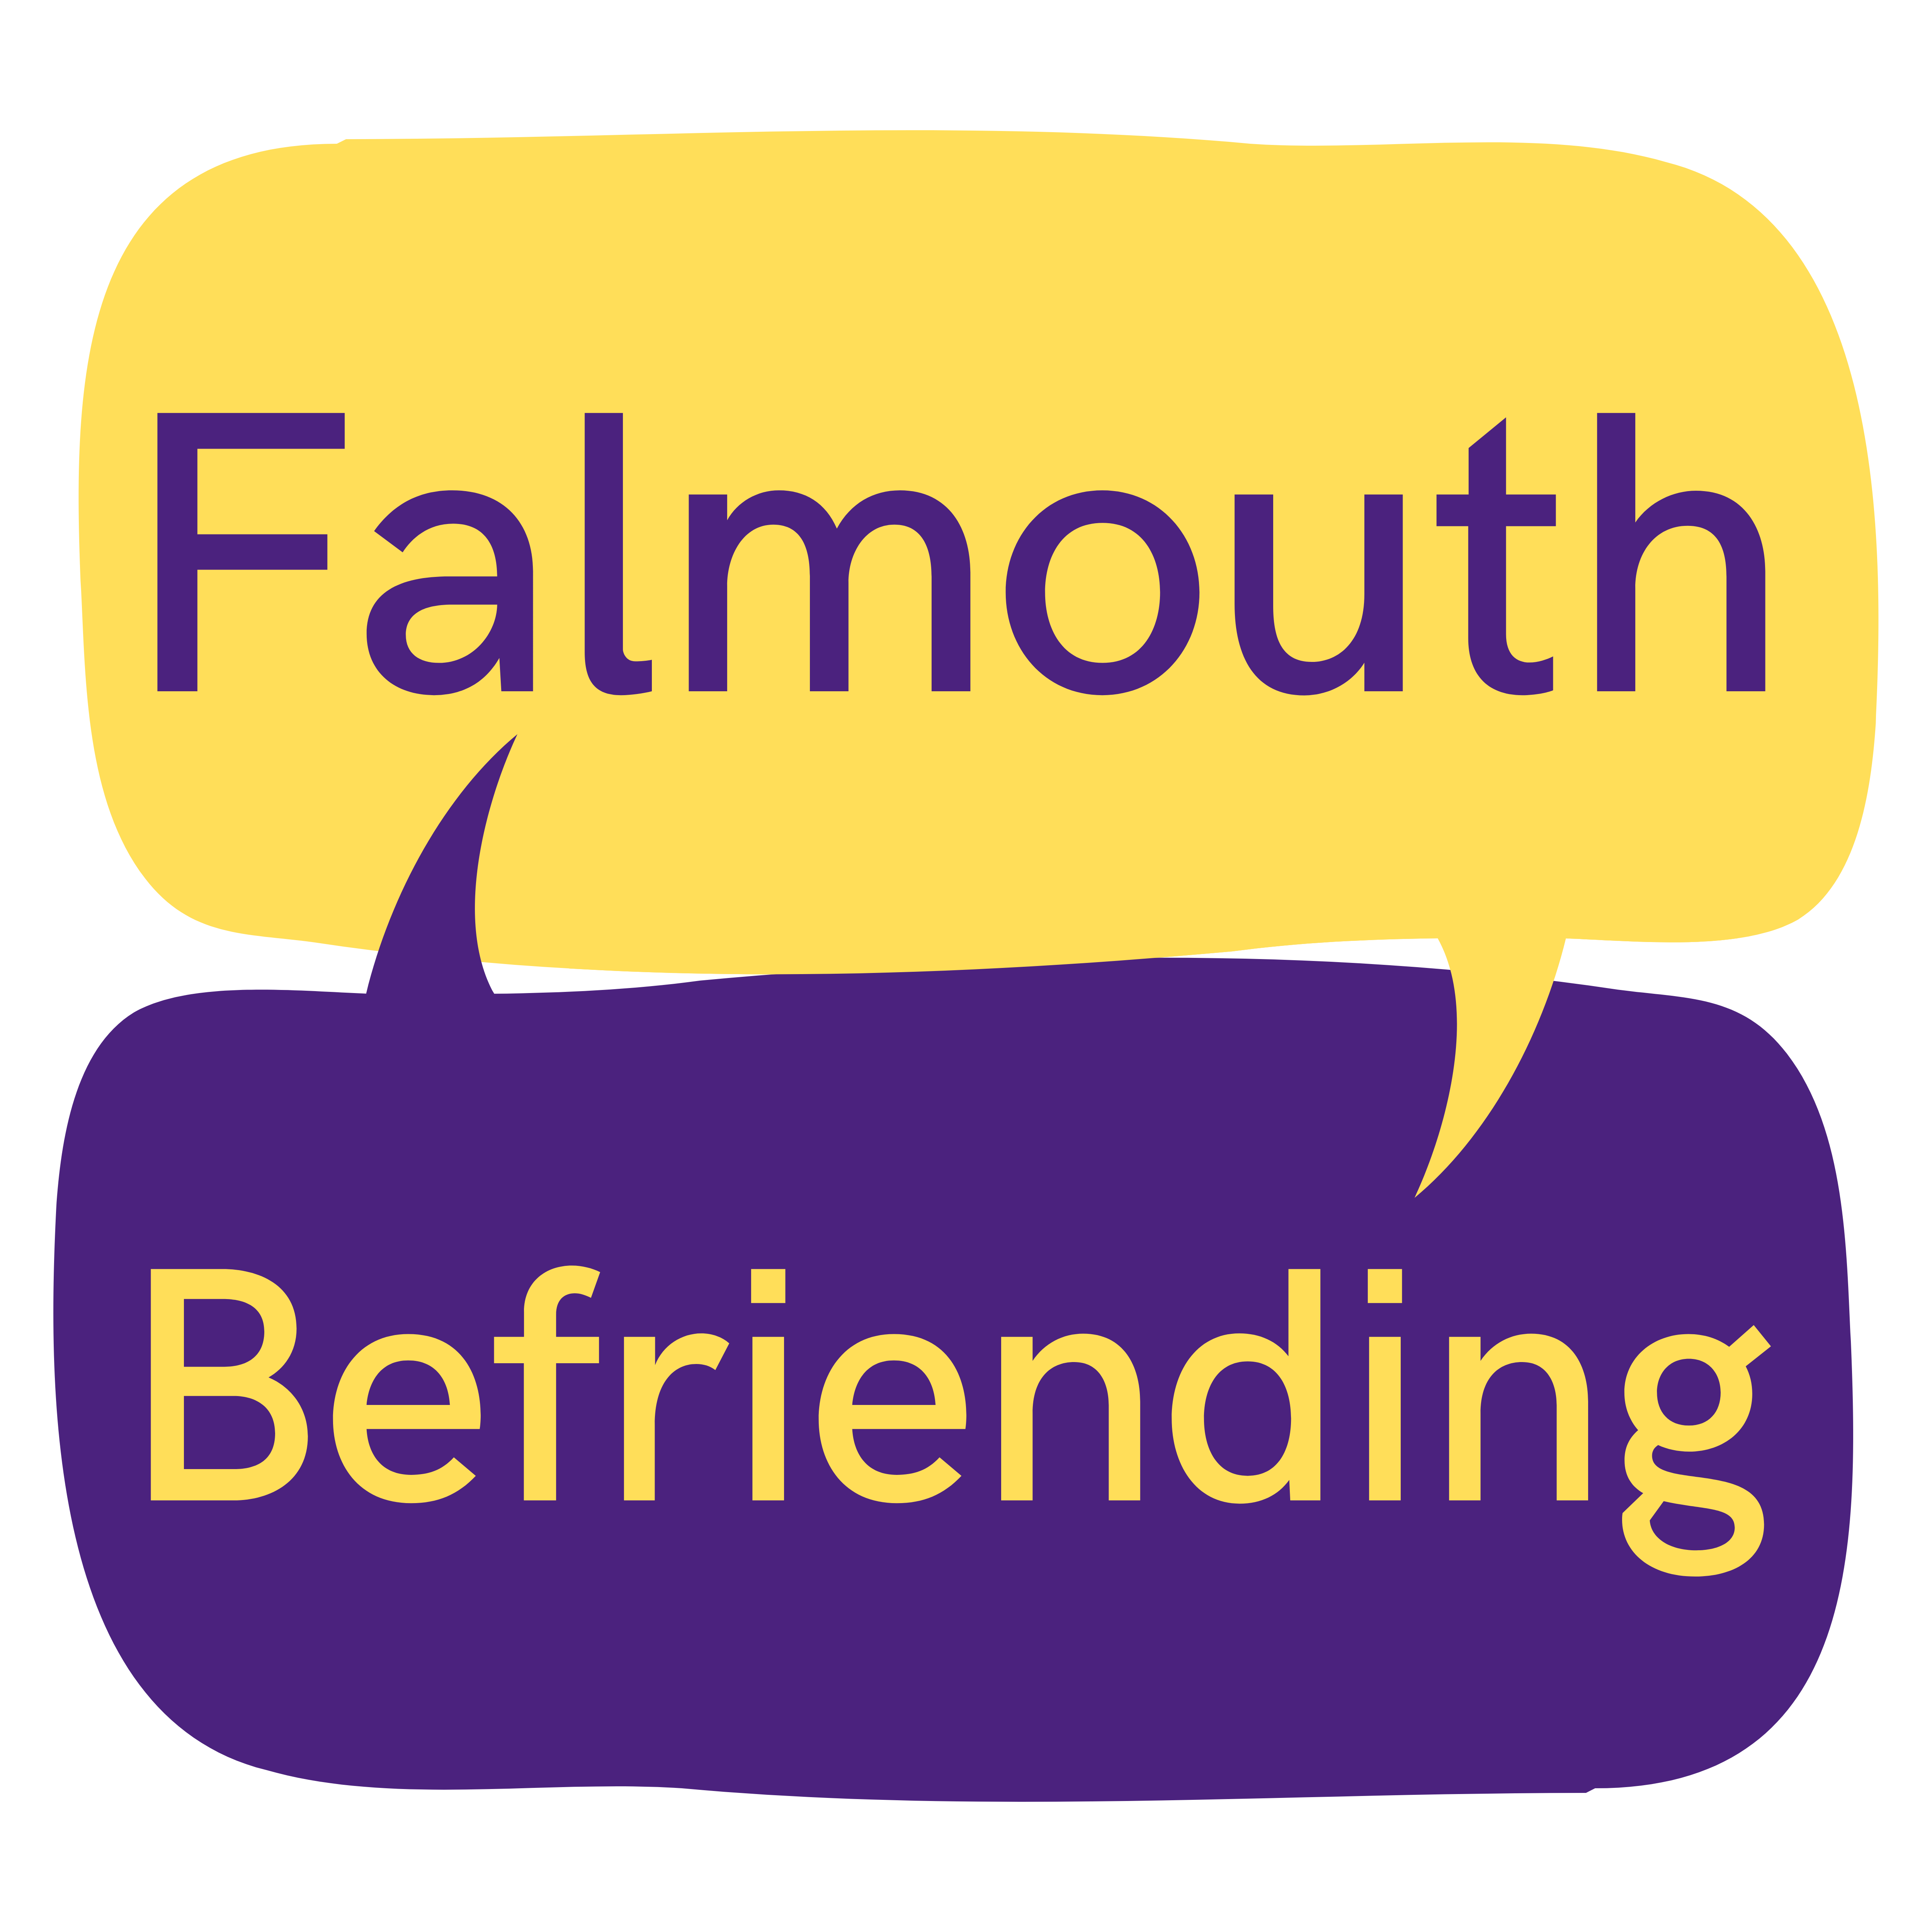 Falmouth Befriending